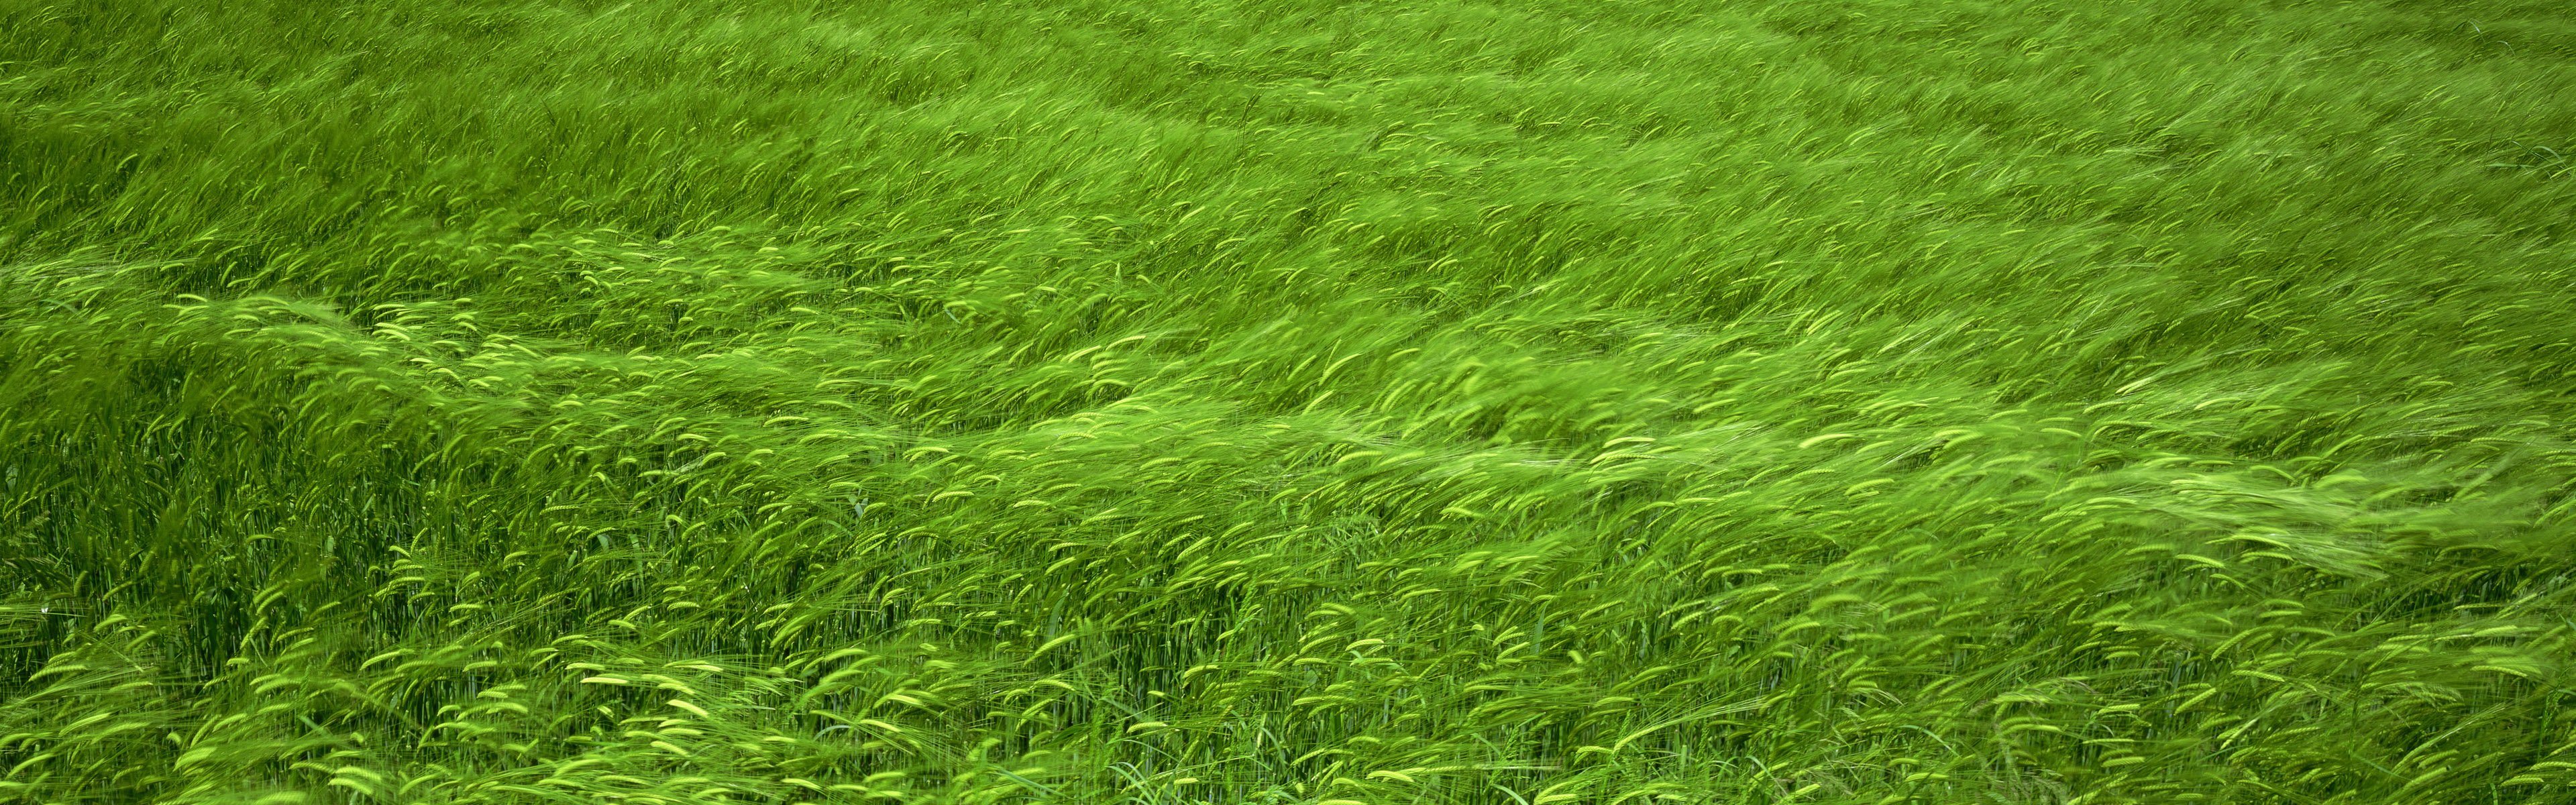 fields, Wheat Wallpaper